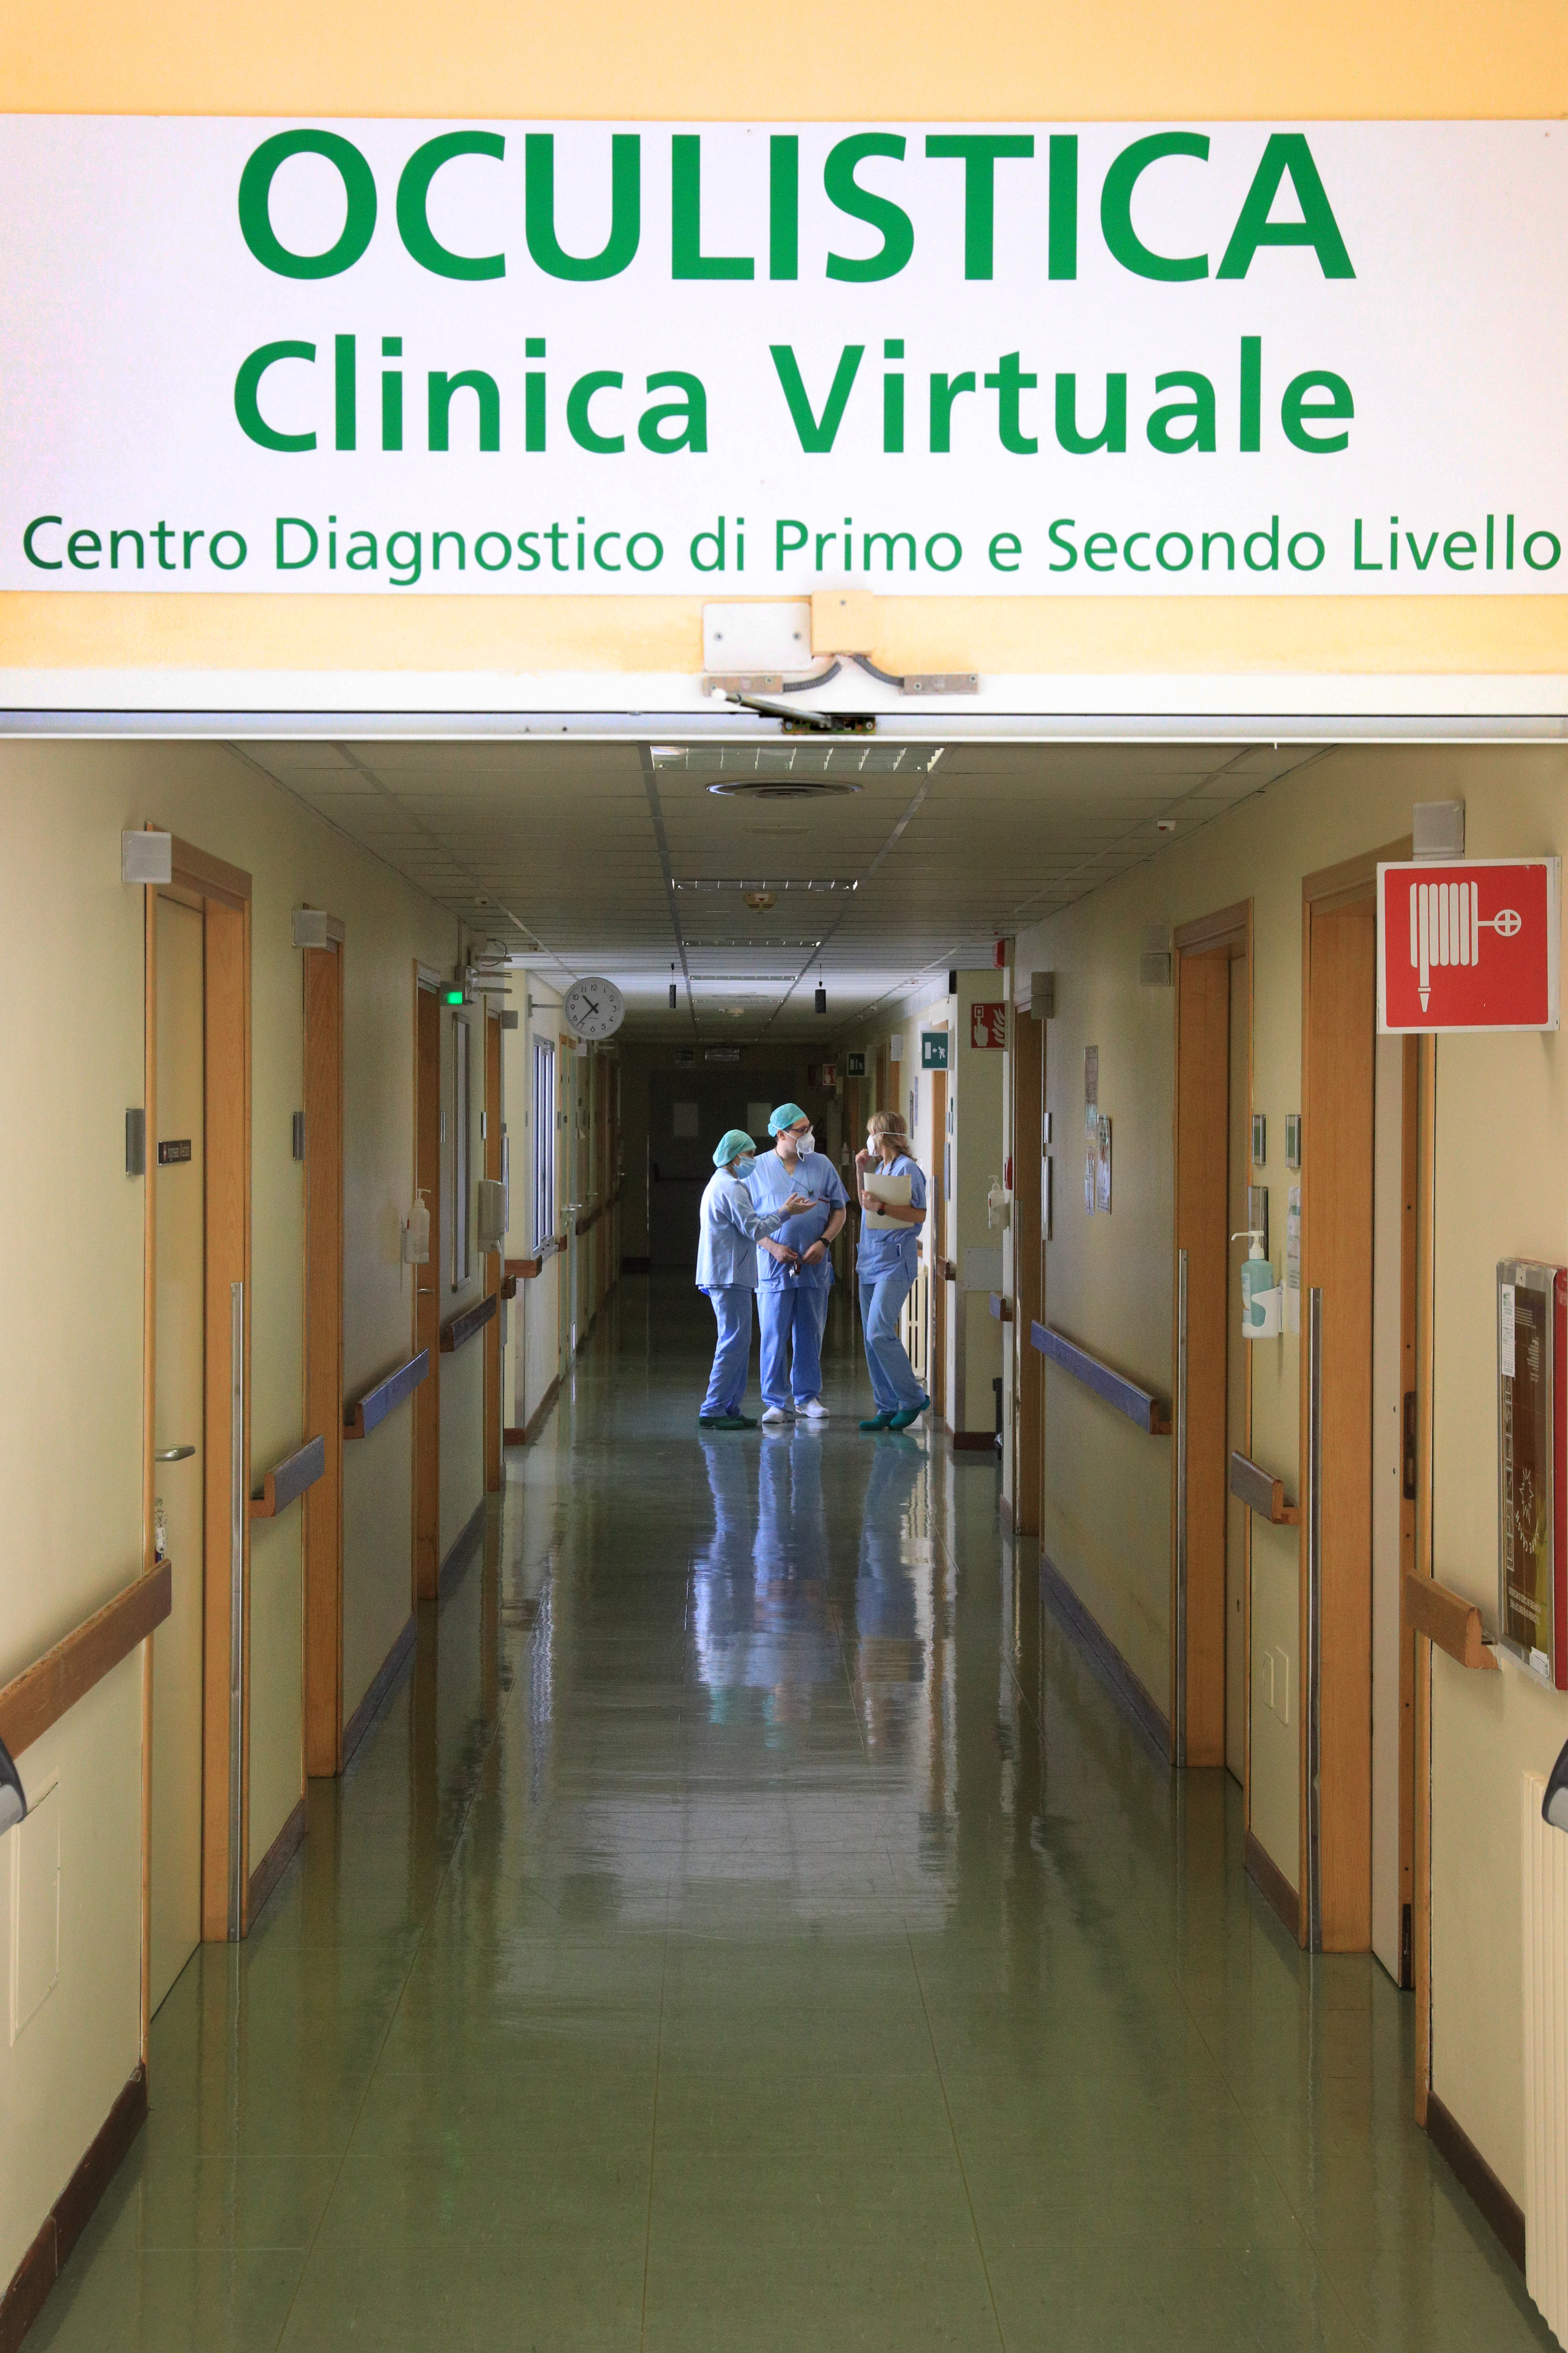 La clinica virtuale